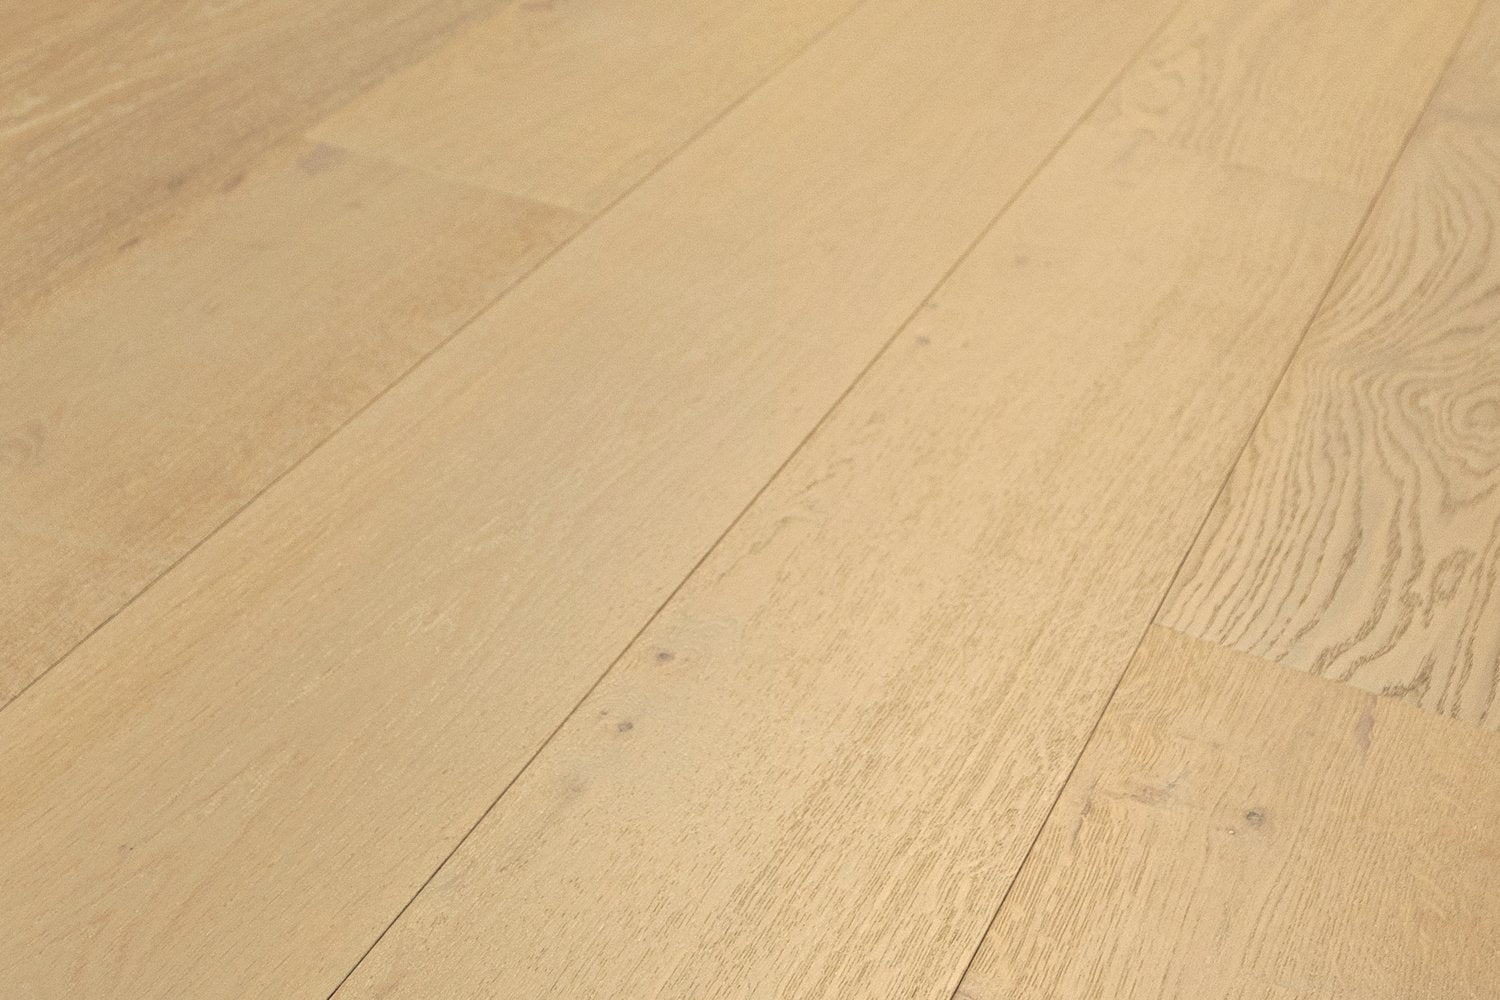 surface group artisan en bois brittany ocean vista white oak engineered hardwood flooring plank angled.jpg